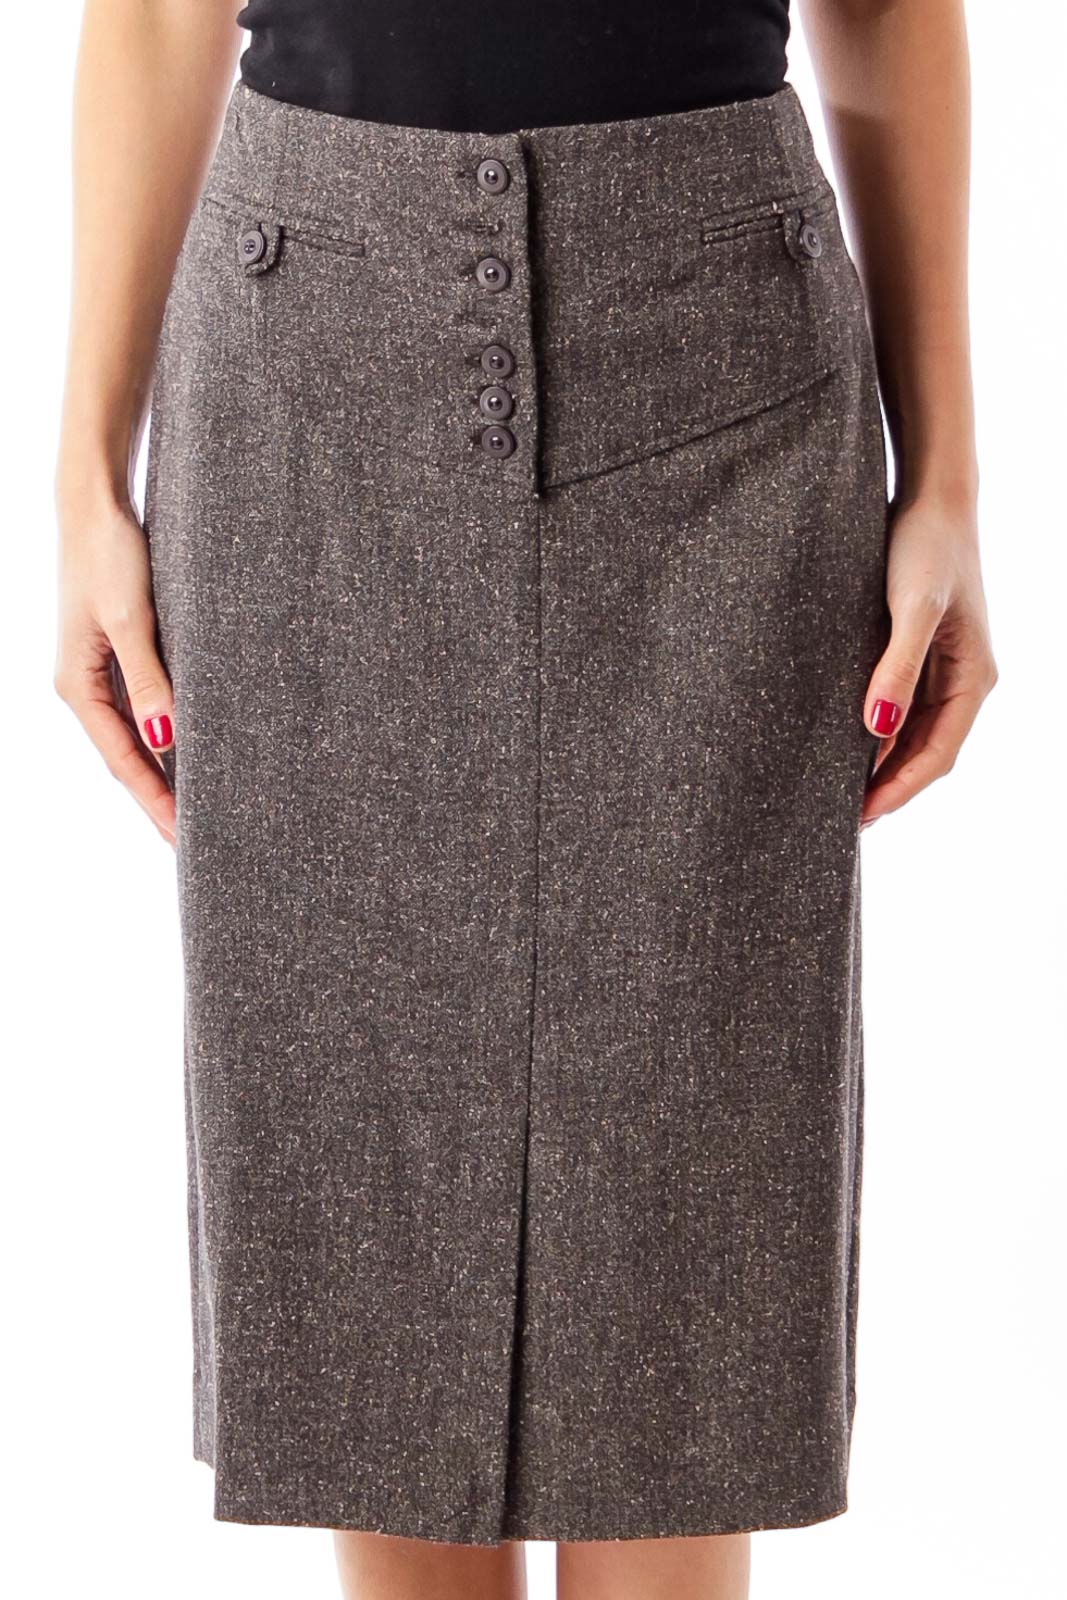 Brown Tweed Pencil Skirt Front